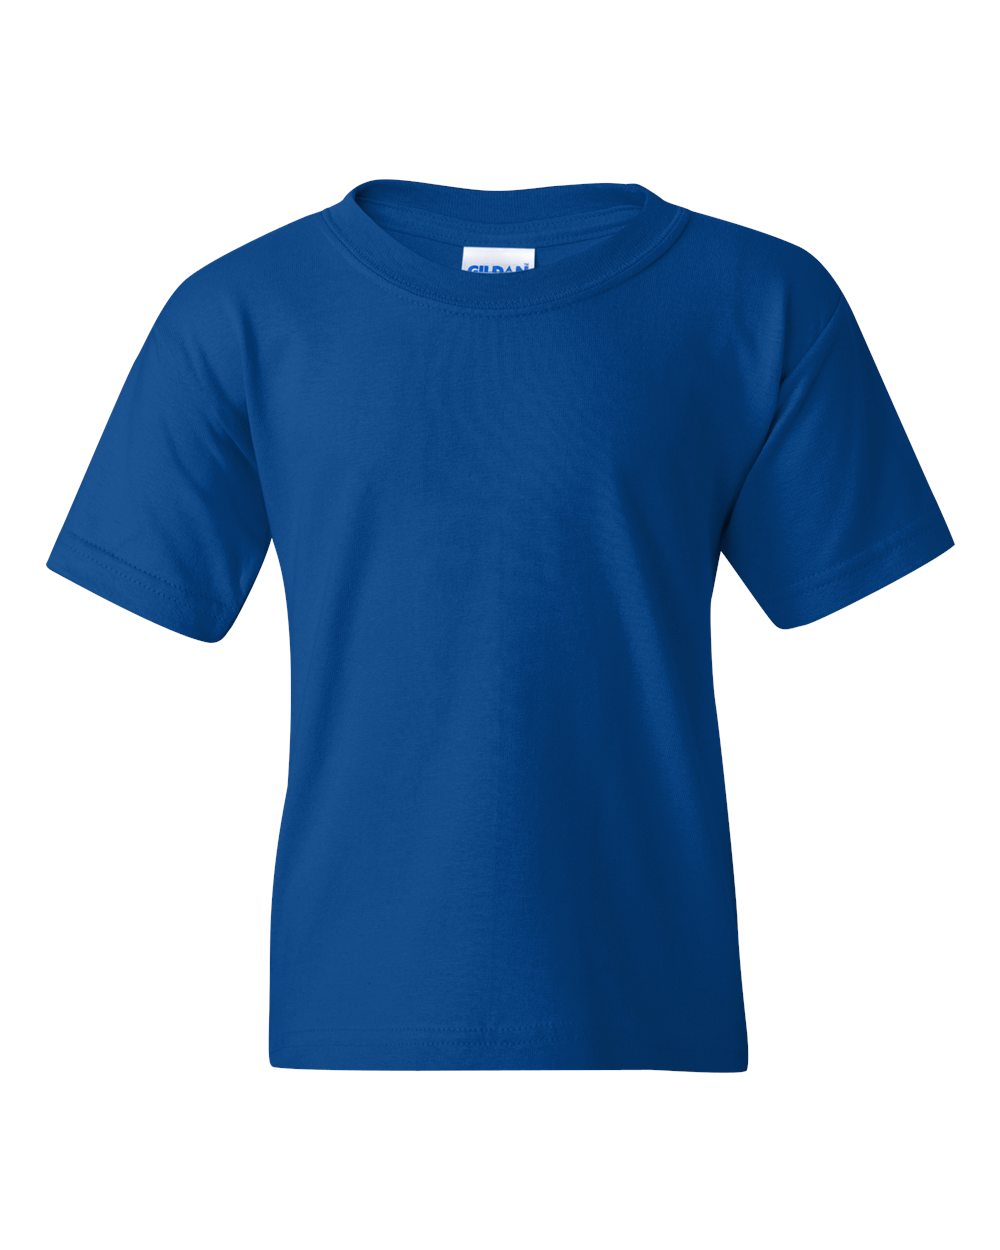 5000B - T-shirt coton supérieur pour enfants